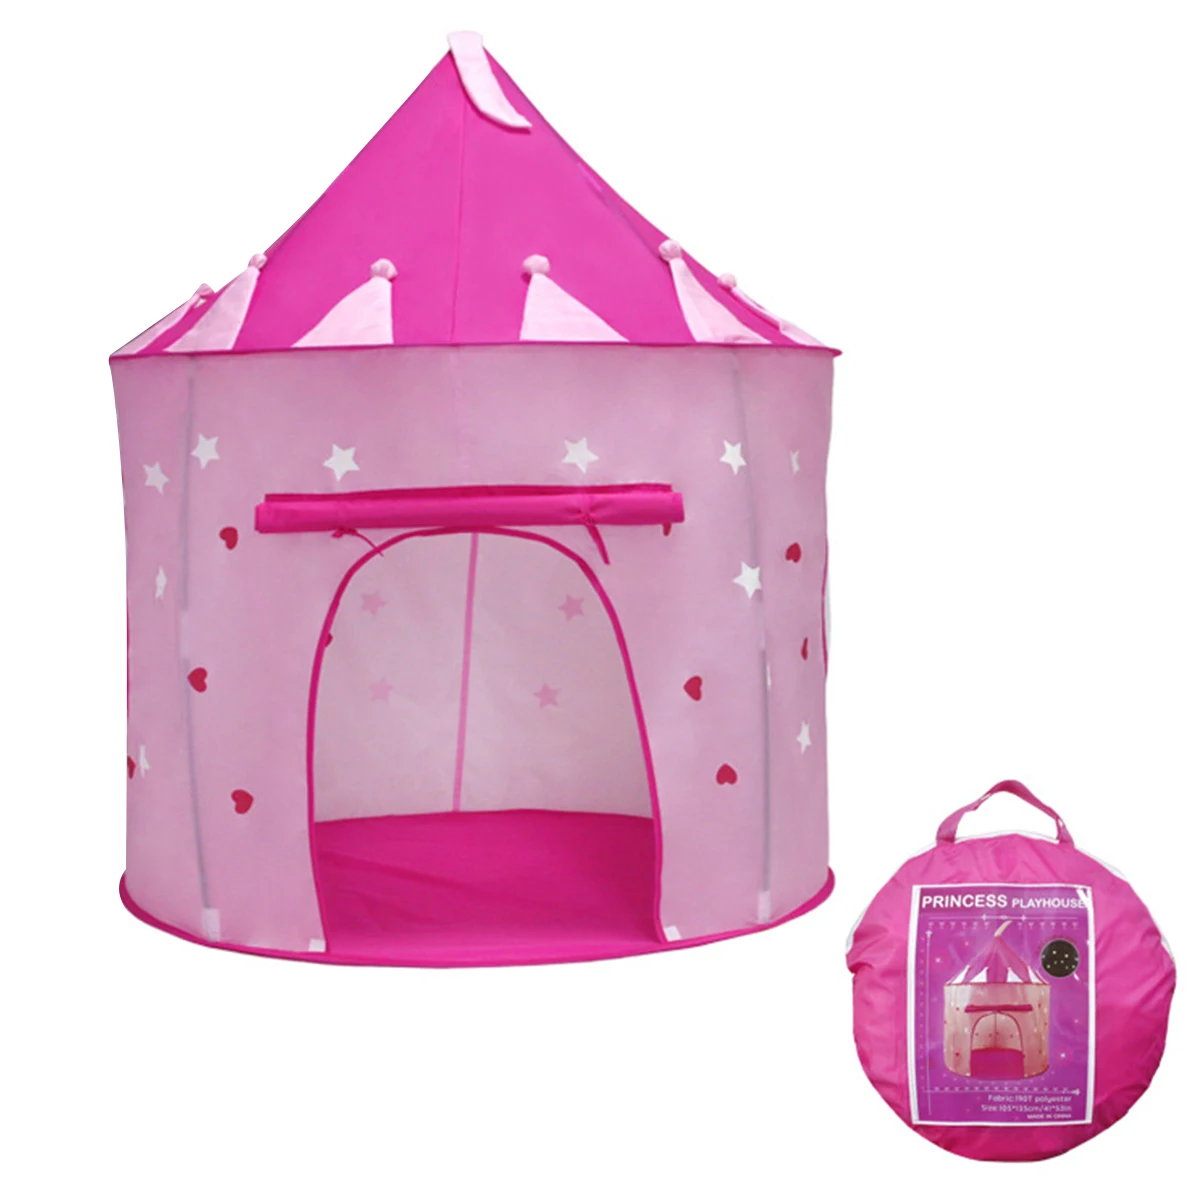 

Детская игровая палатка со звездами, Складная портативная игровая палатка для использования в помещении и на улице